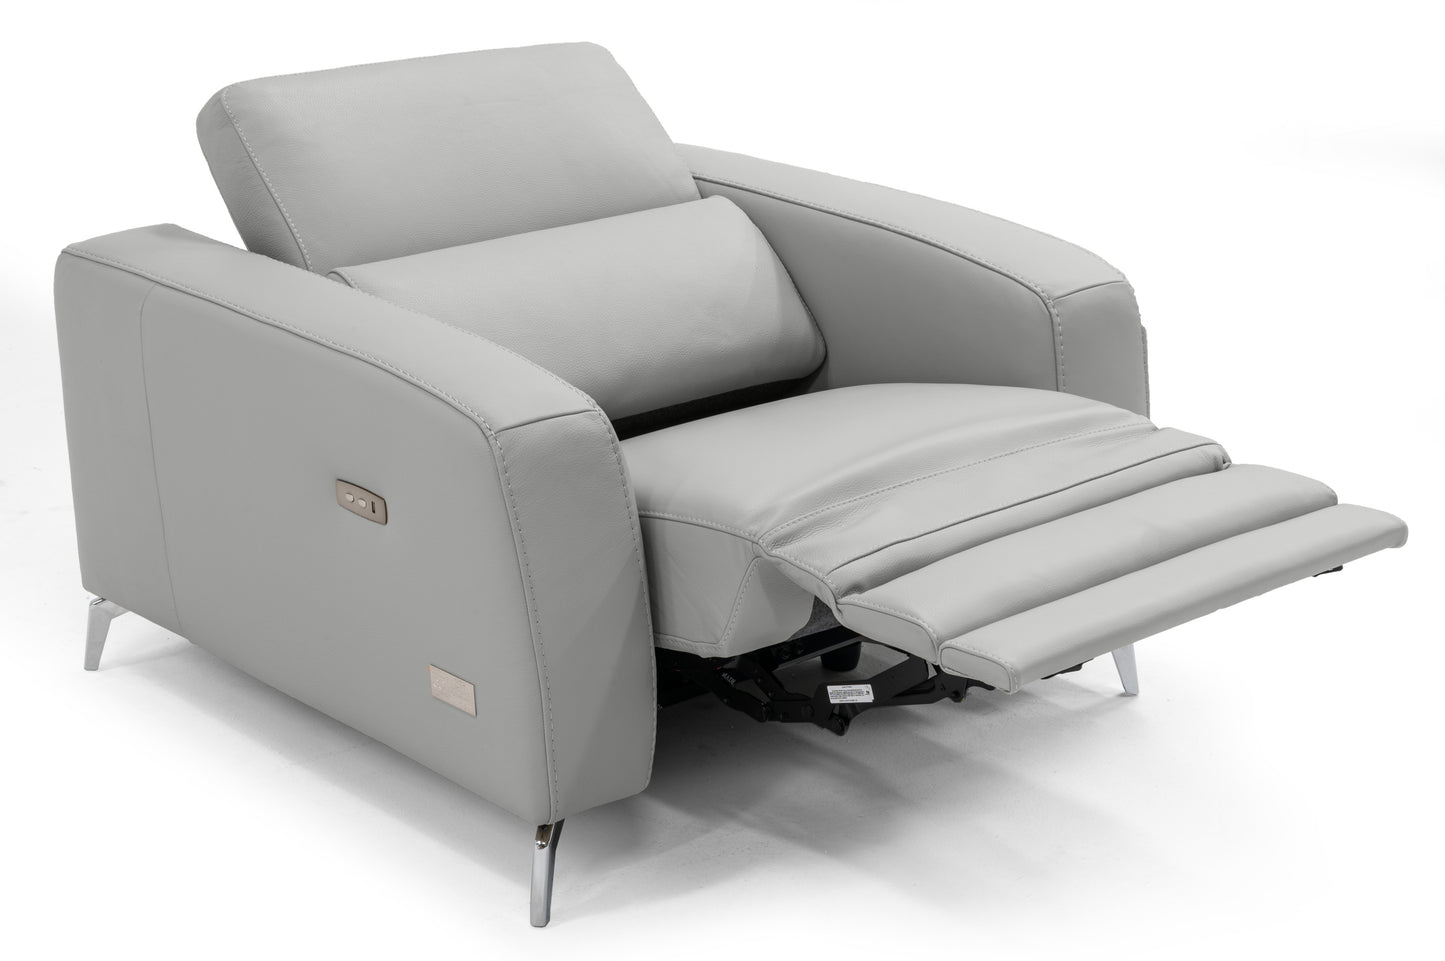 Coronelli Collezioni Turin - Italian White Leather Recliner Chair | Lounge Chairs | Modishstore - 3